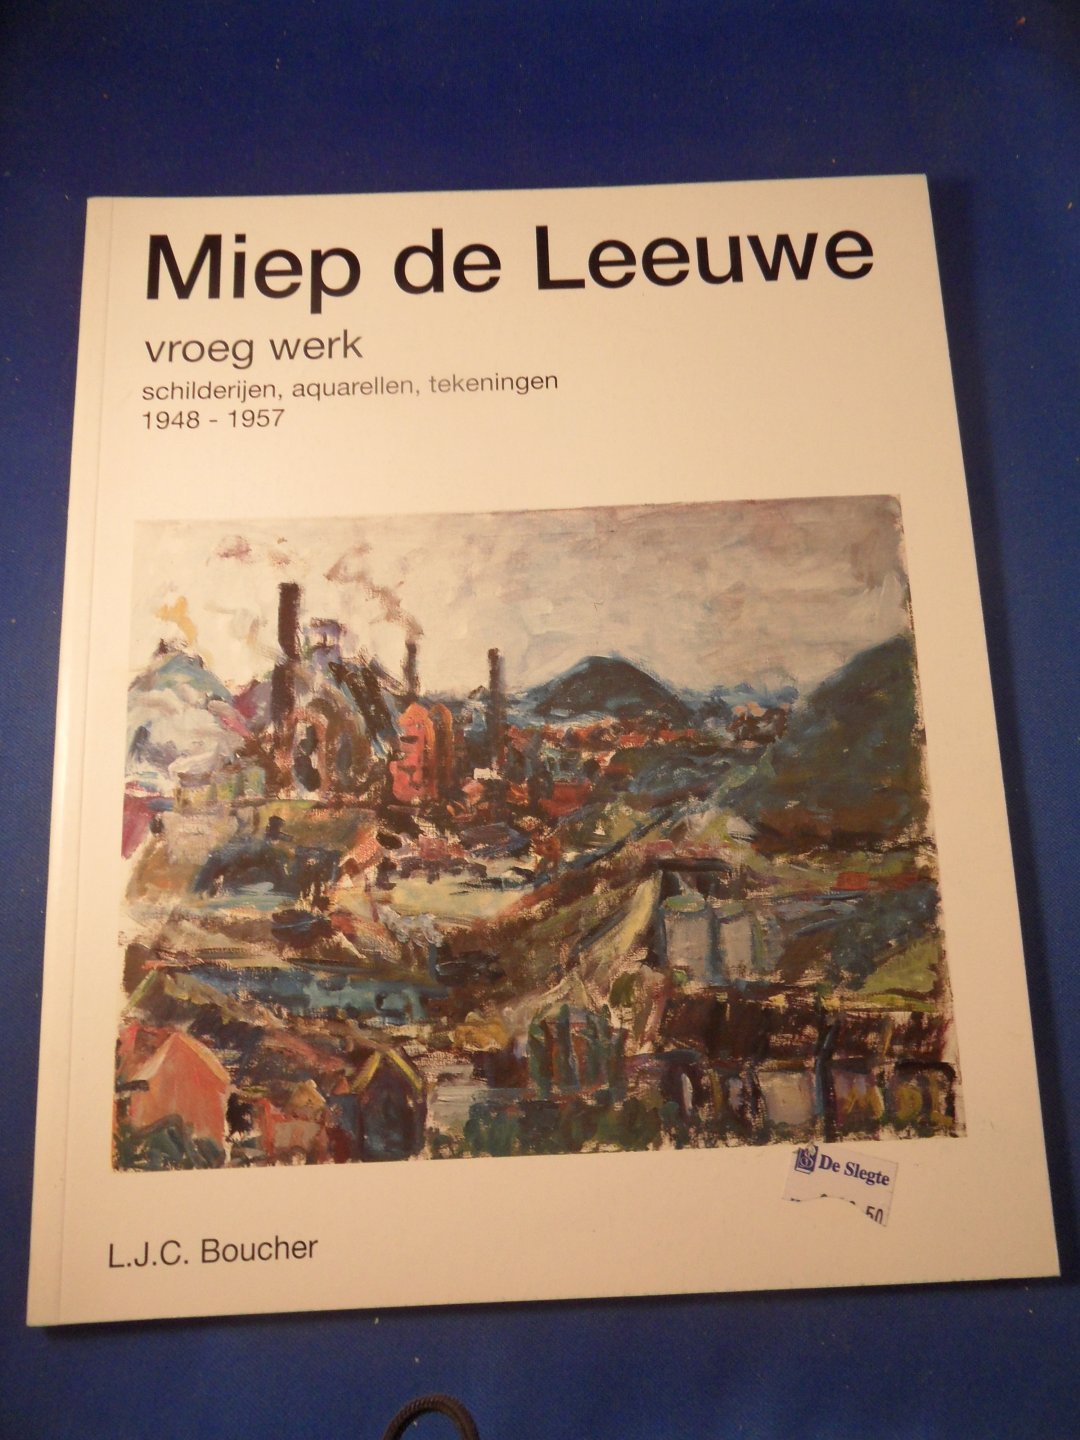 Bleich, Herman - Miep de Leeuwe, vroeg werk. Schilderijen, aquarellen, tekeningen 1948-1957